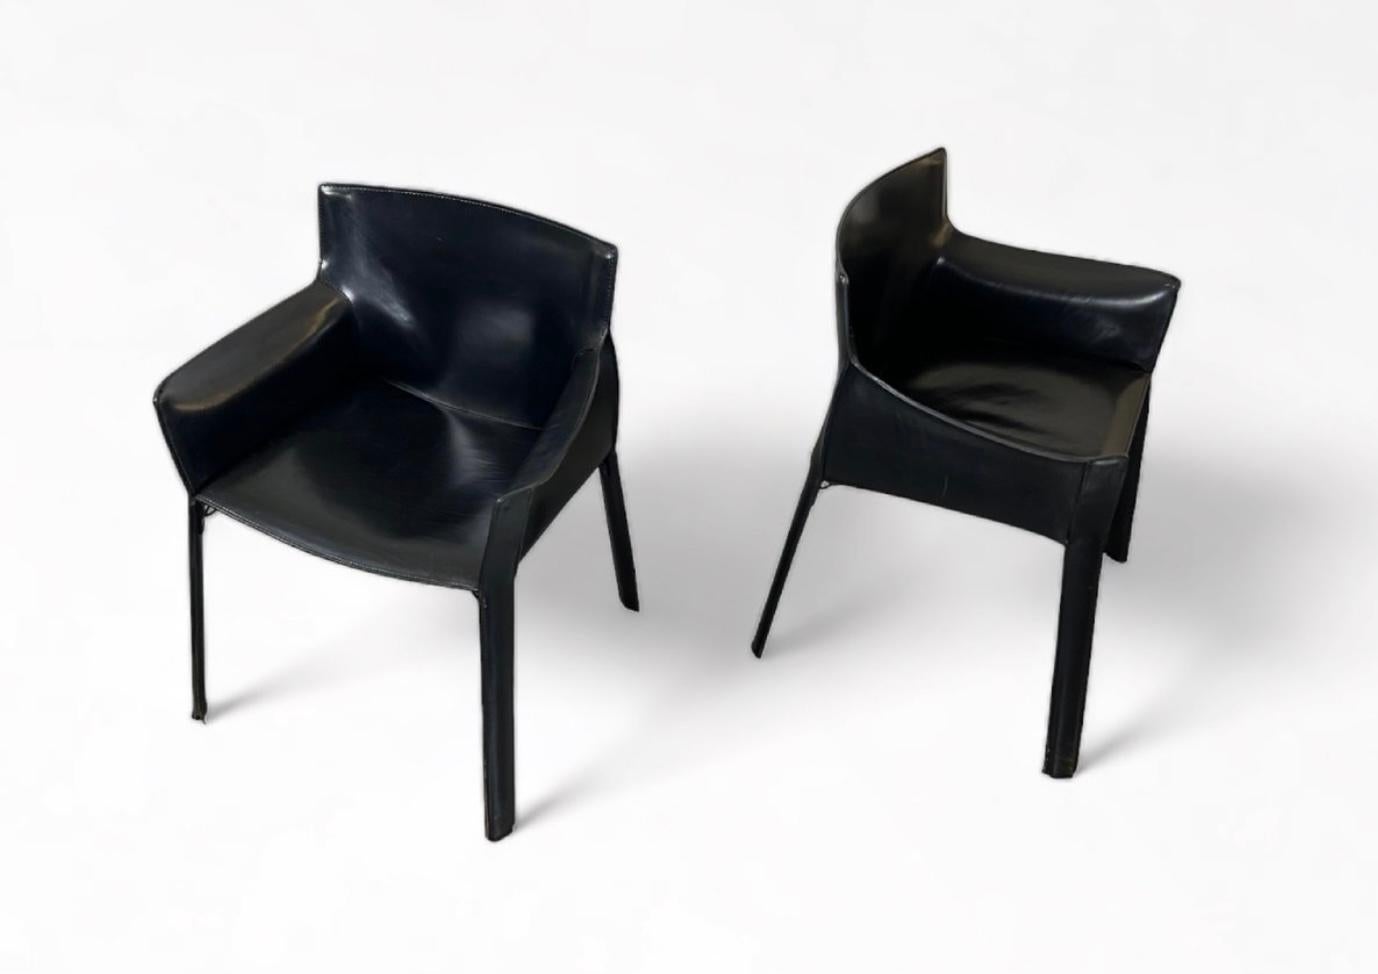 Paire de fauteuils P-90, en cuir noir sur structure métallique, conçus par Giancarlo Vegni pour Fasem, Italie, années 1970. Un contemporain des fauteuils CAB 413 de Mario Bellini pour Cassina.

Ces fauteuils sont fabriqués en cuir de selle noir